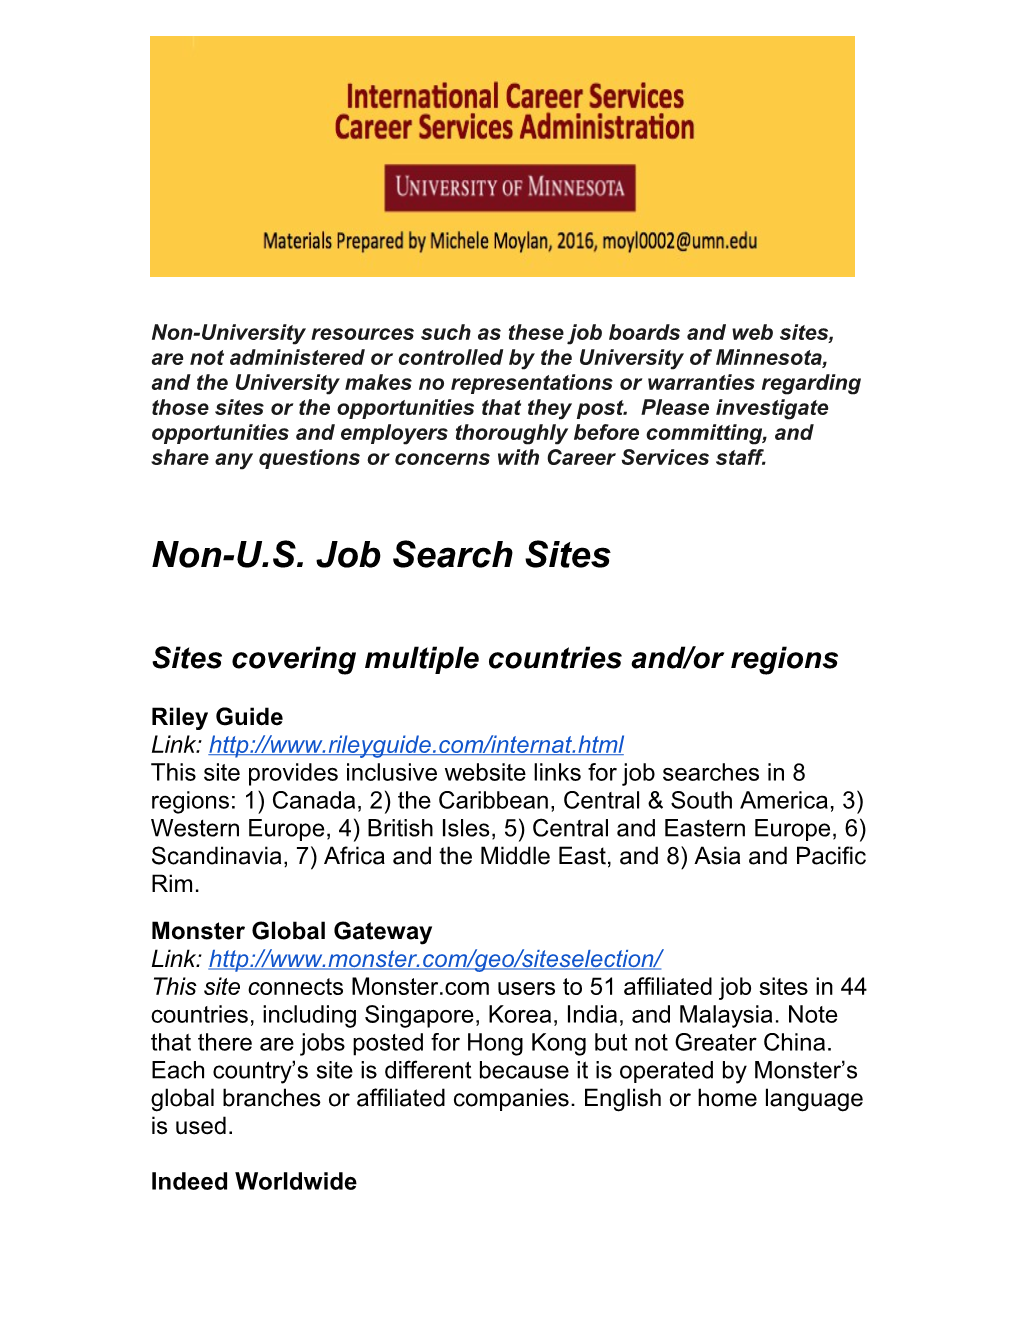 Non-U.S. Job Search Sites